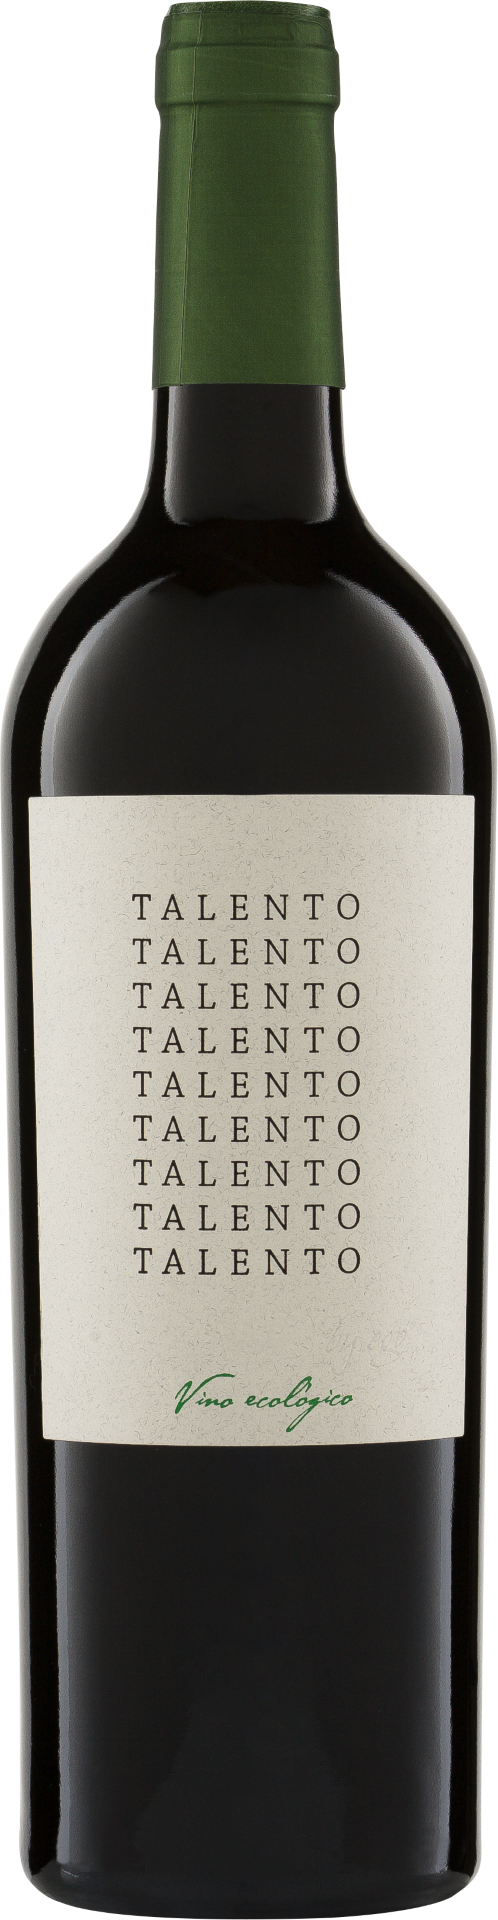 Biowein DO Talento Bio 2020 Weinhandel Jumilla Monastrell |